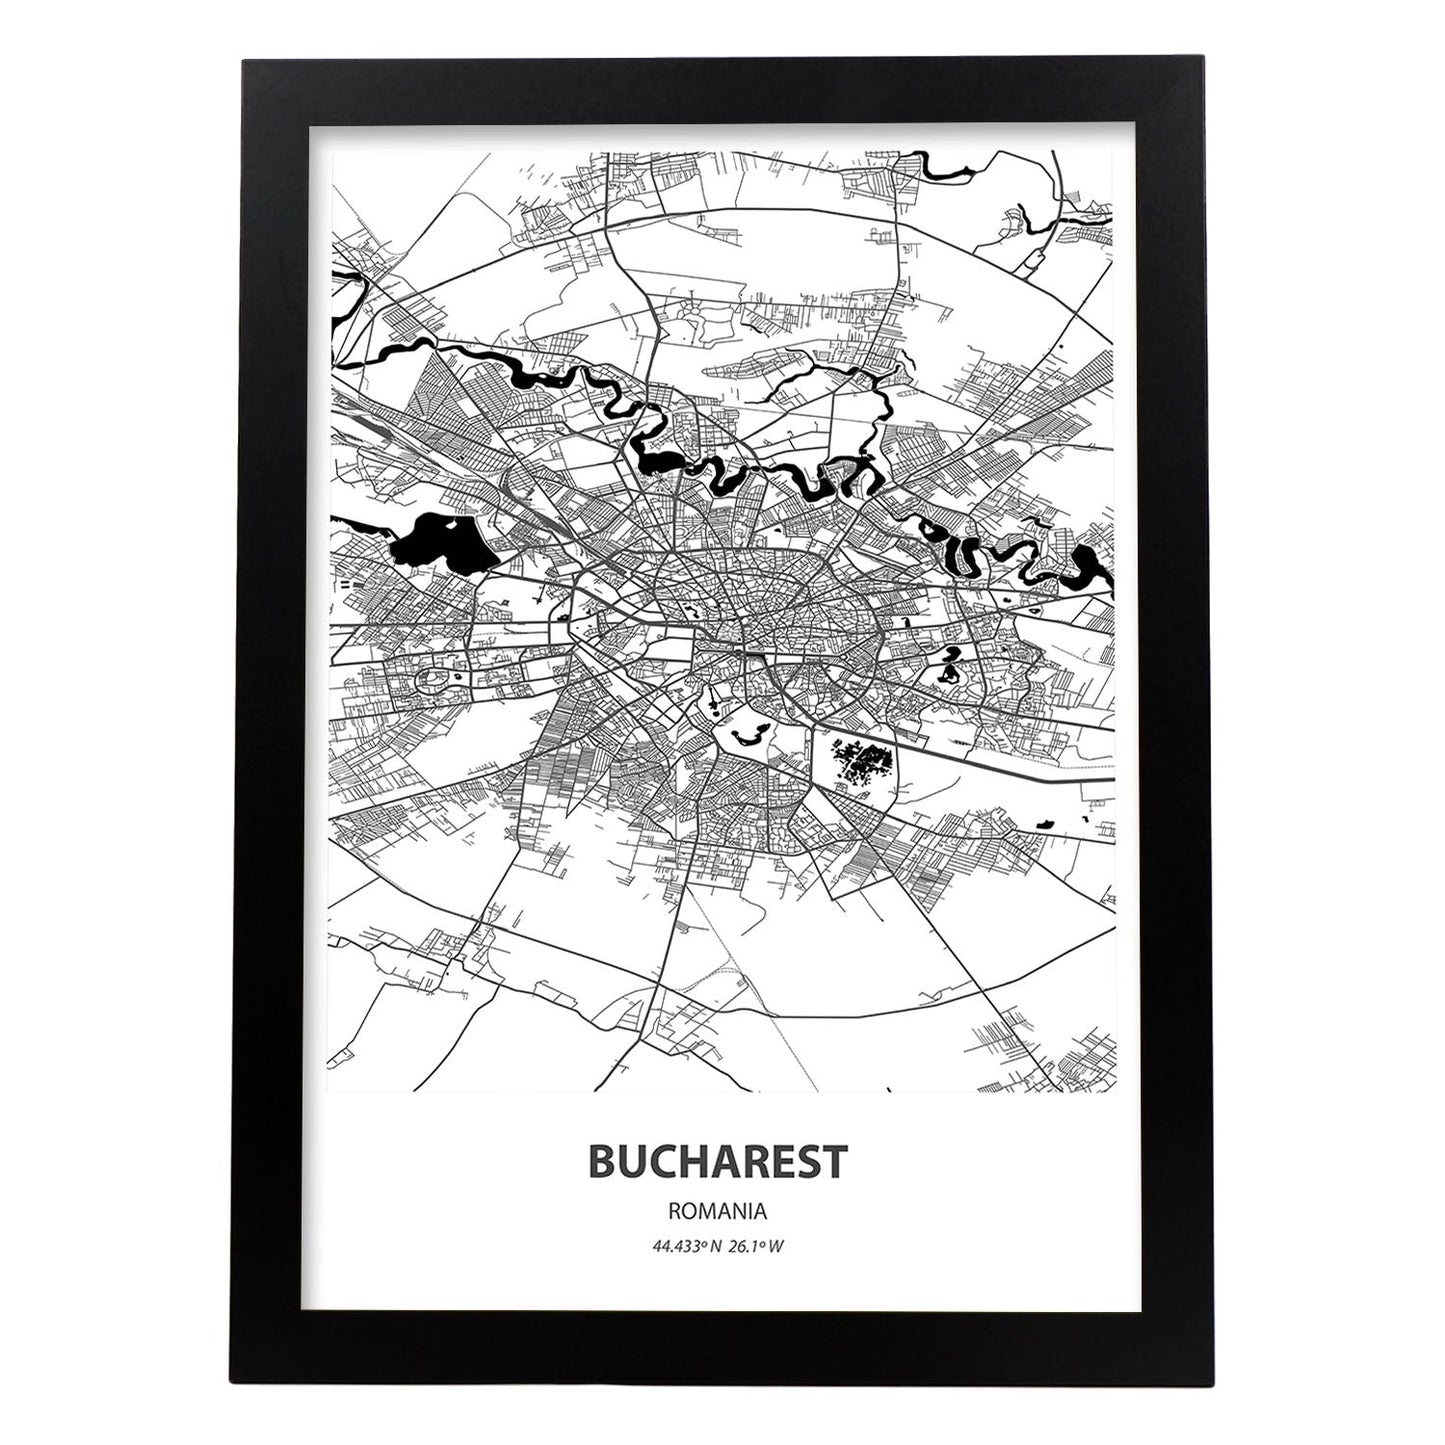 Poster con mapa de Bucharest - Rumania. Láminas de ciudades de Europa con mares y ríos en color negro.-Artwork-Nacnic-A3-Marco Negro-Nacnic Estudio SL